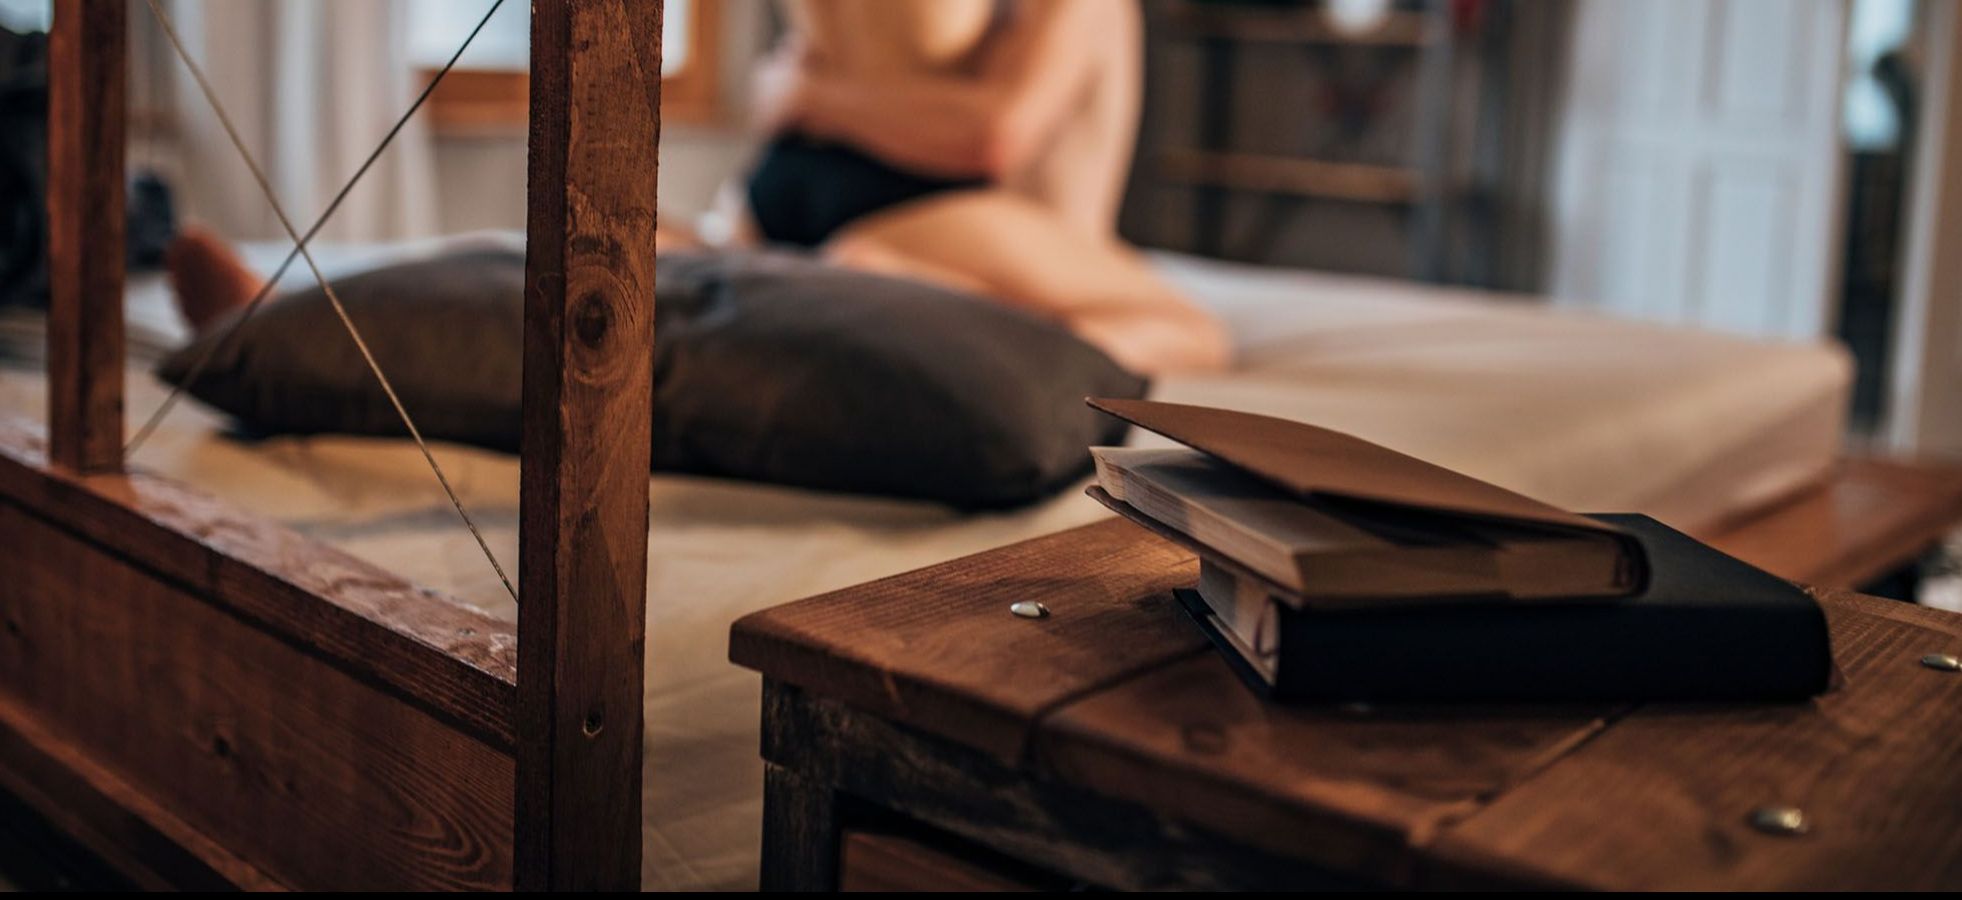 Bücher liegen auf einem Hocker, im Hintergrund hat ein Paar Sex